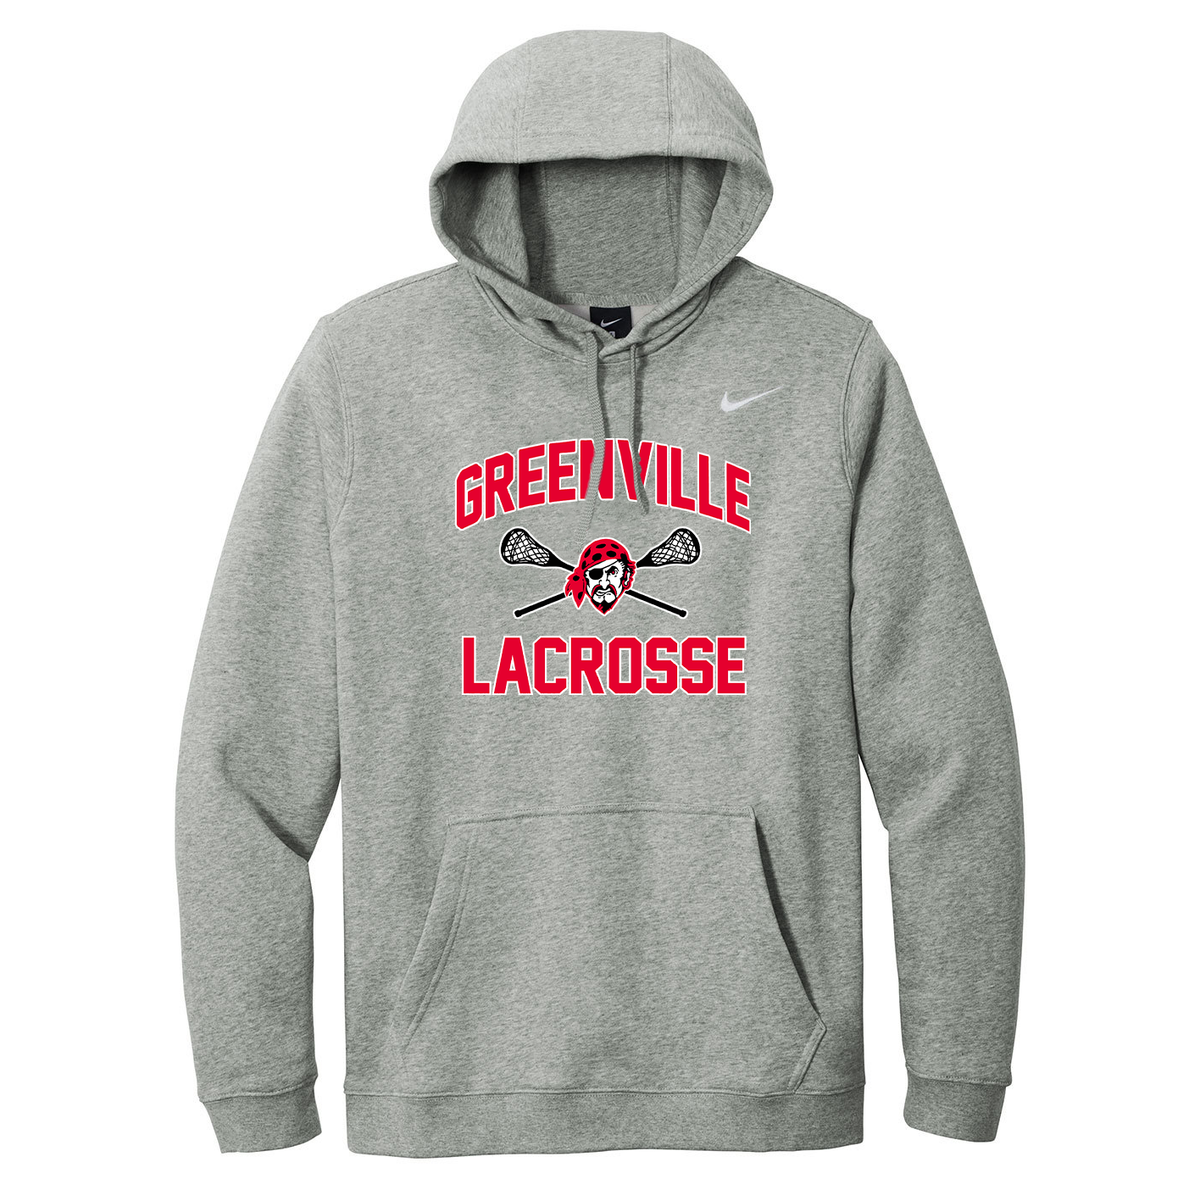 Greenville Girls Lacrosse Nike Fleece Sweatshirt